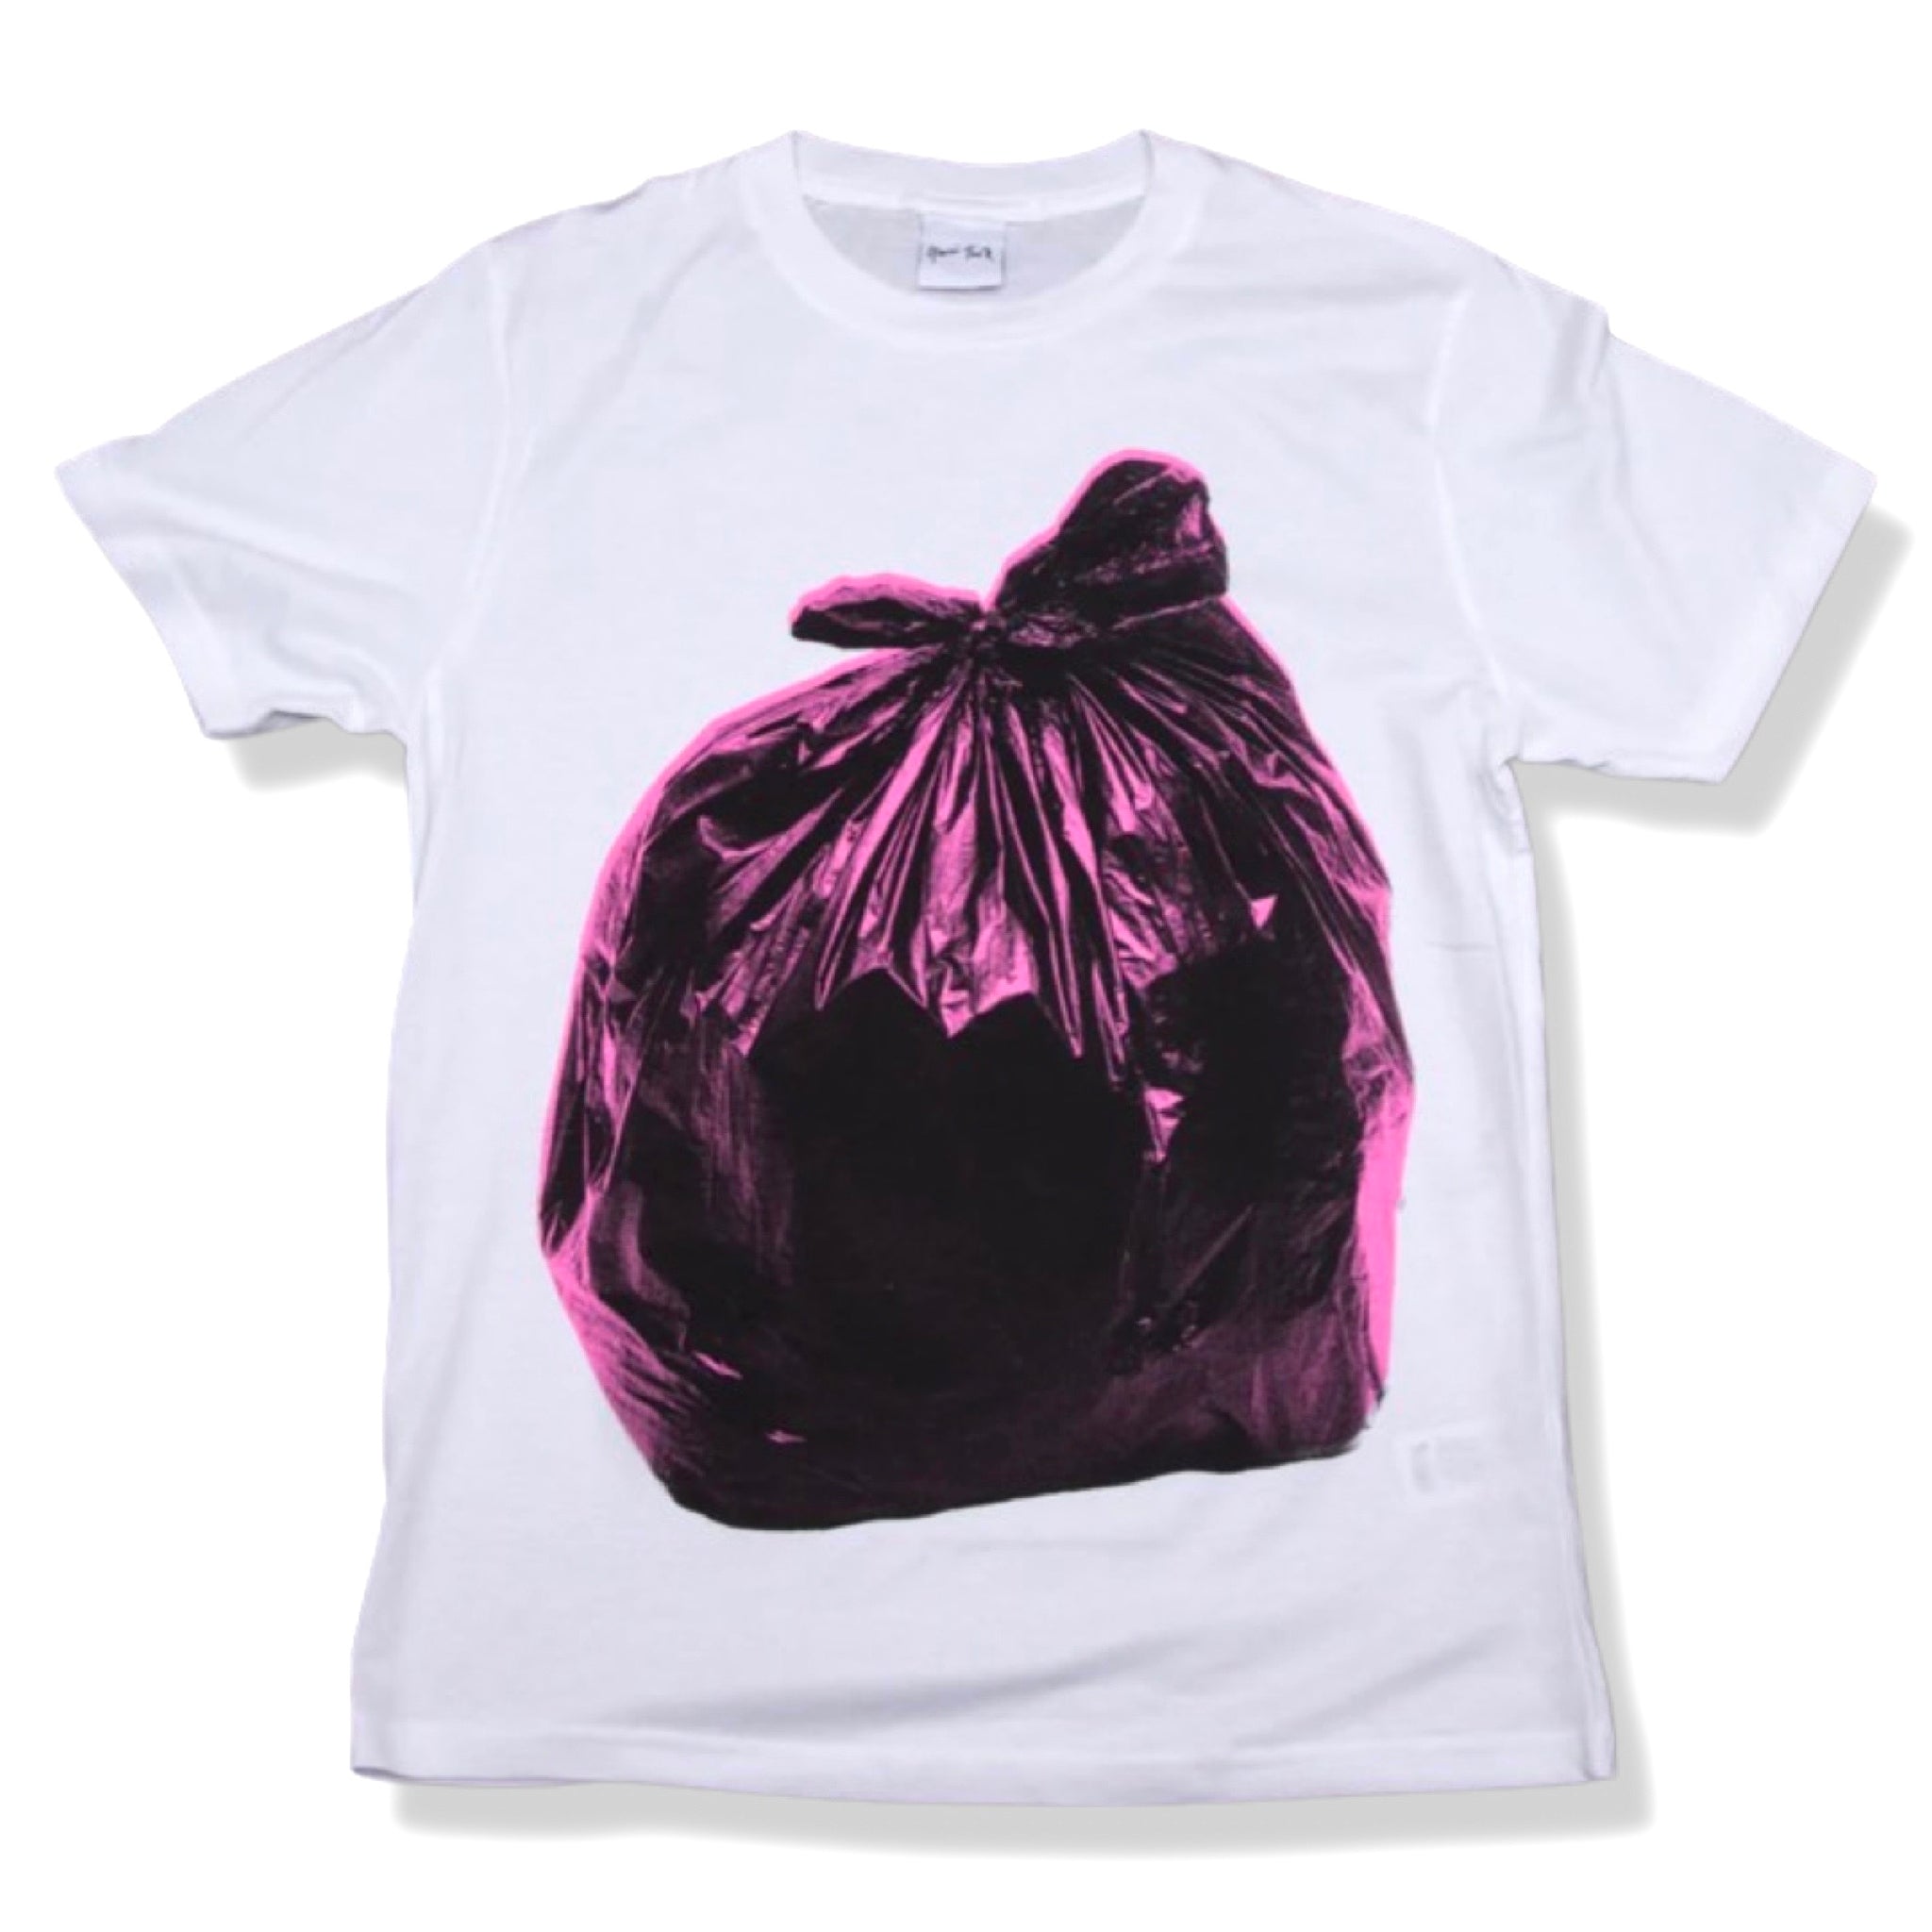 Gavin Turk - Bin Bag T-shirt (pink)